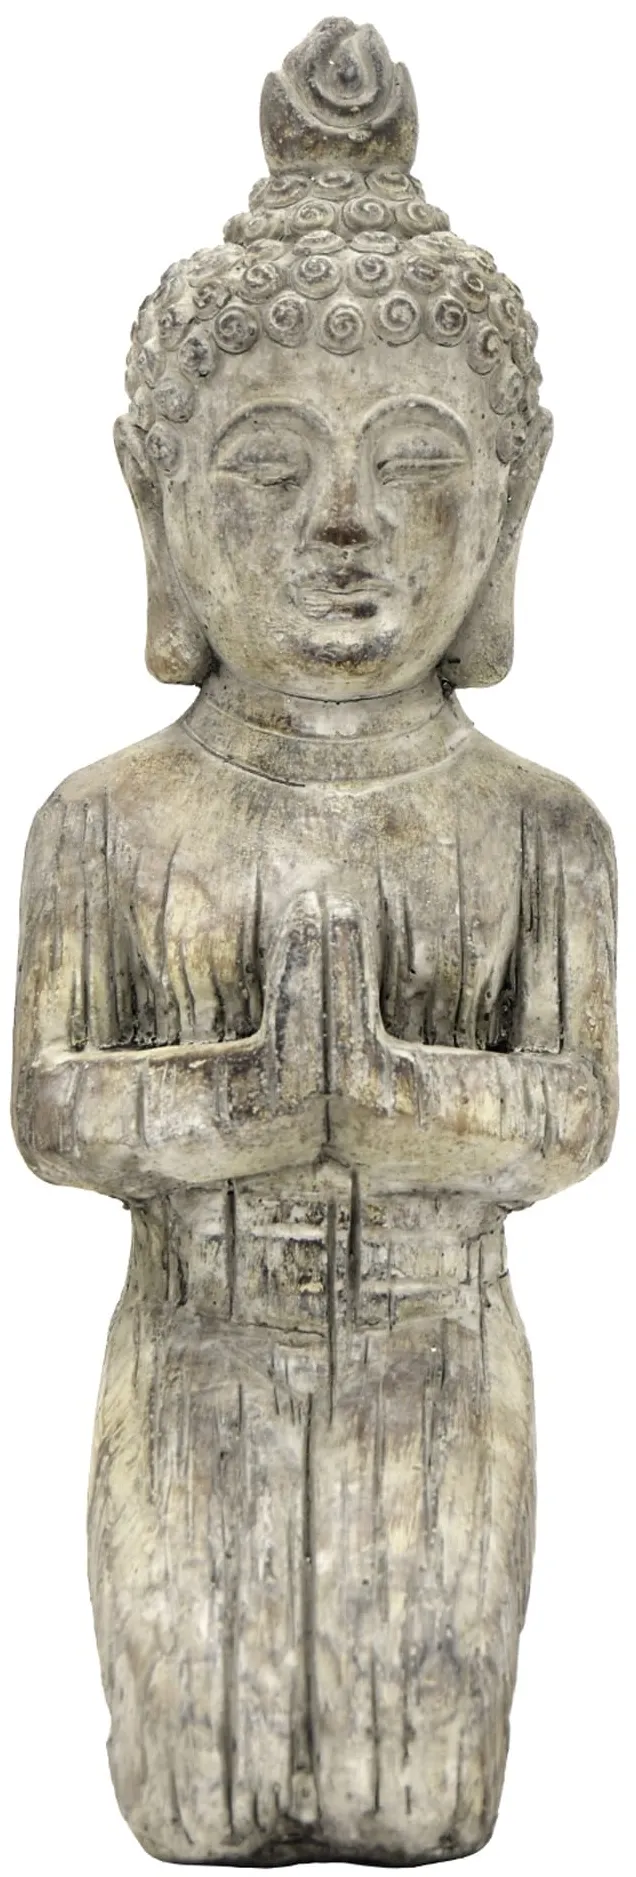 Grey Kneeling Buddha Figurine 6"W x 16.75"H